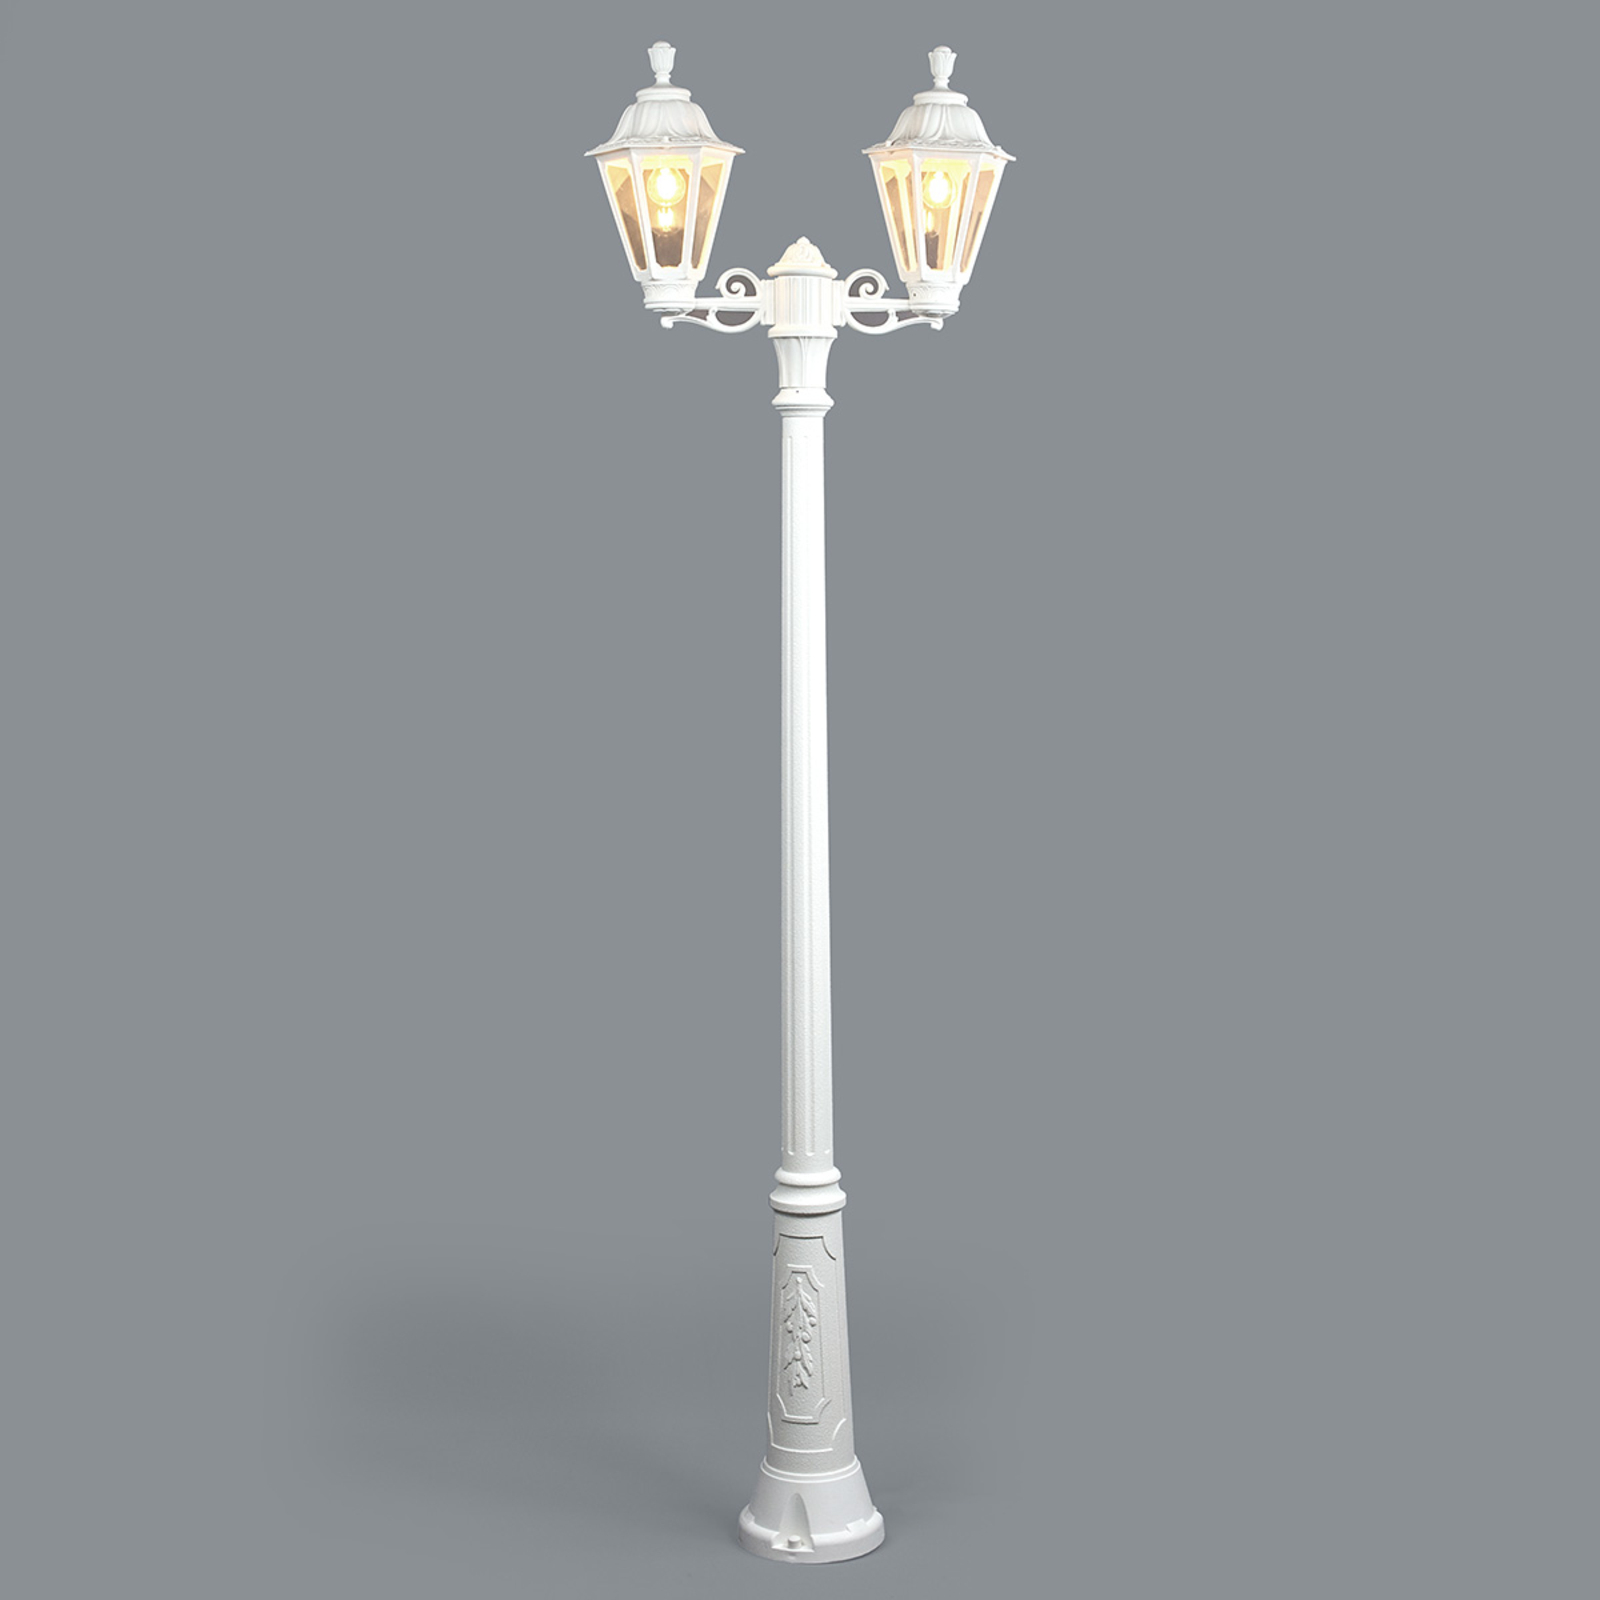 LED stulpų šviestuvas "Artu Rut" 2 lemputės E27 baltos spalvos